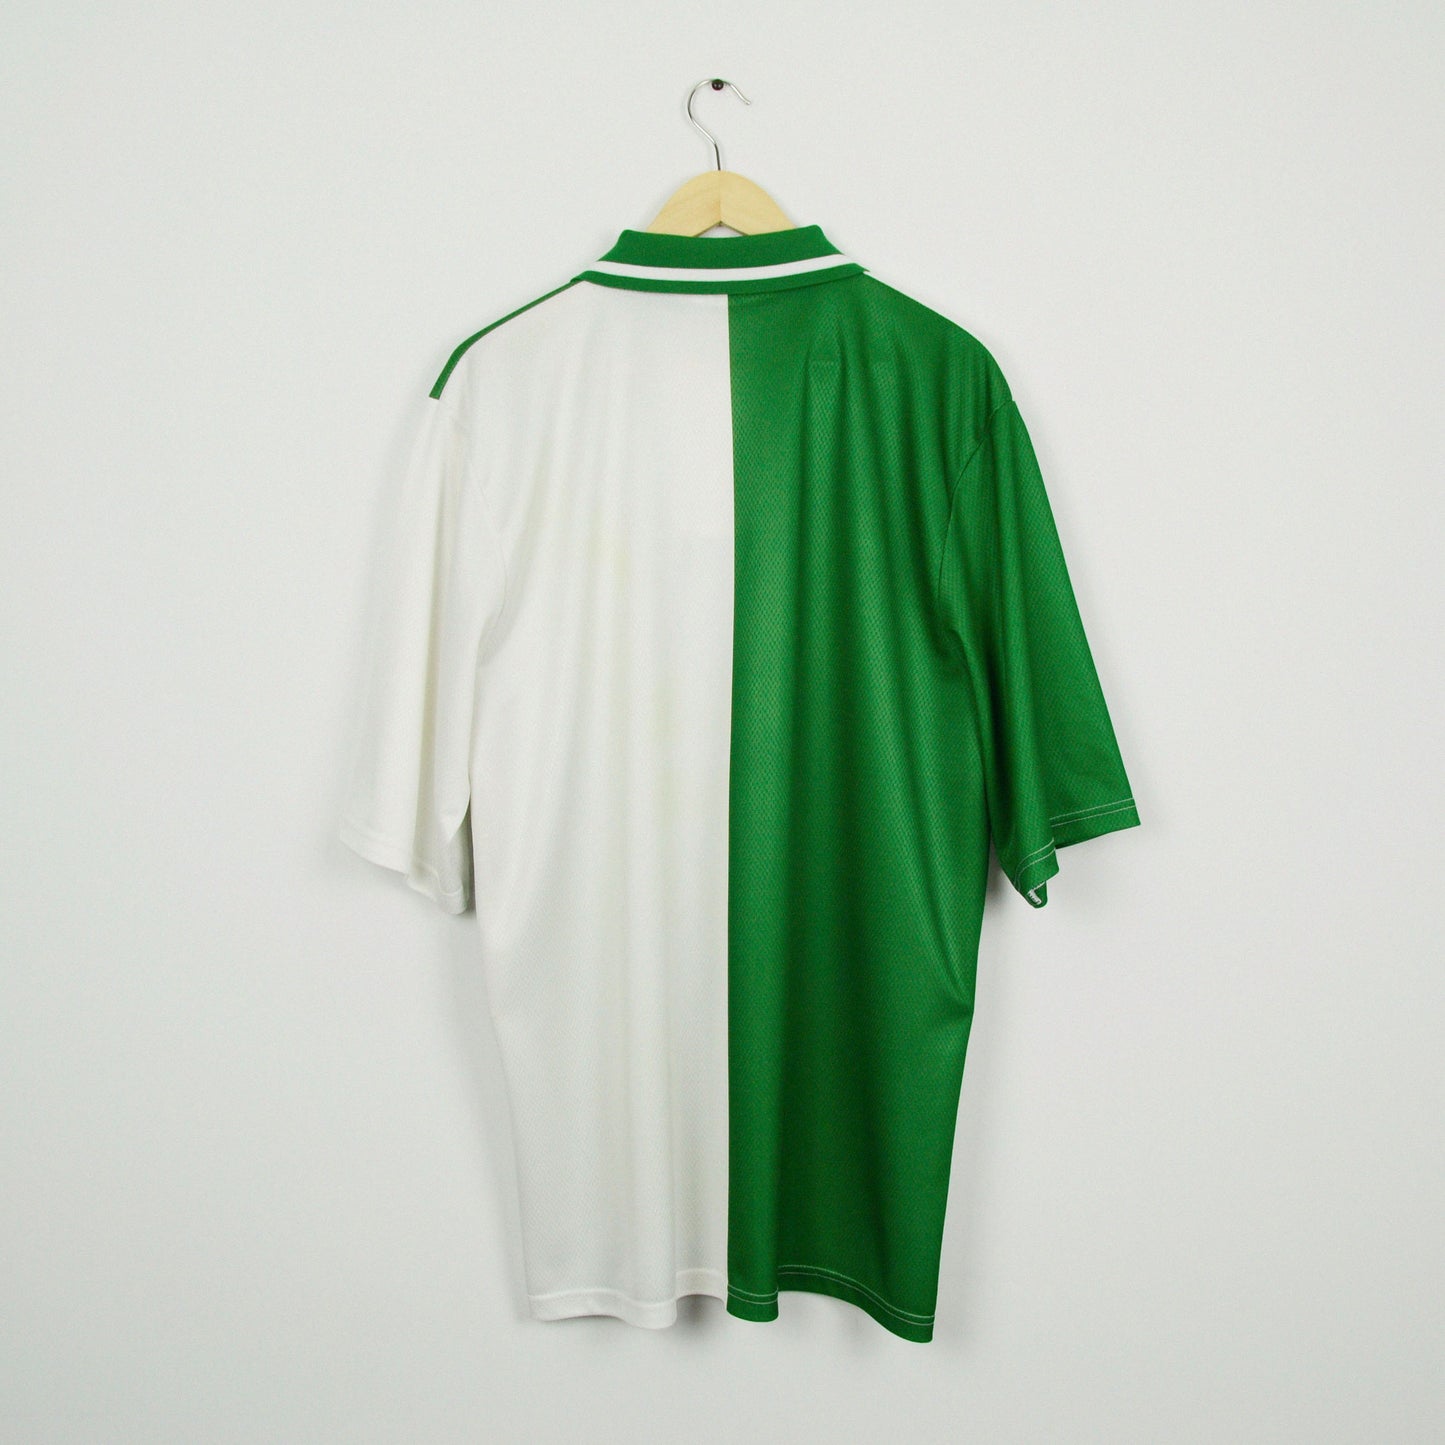 1995-96 Asics Millwall Away Shirt XL